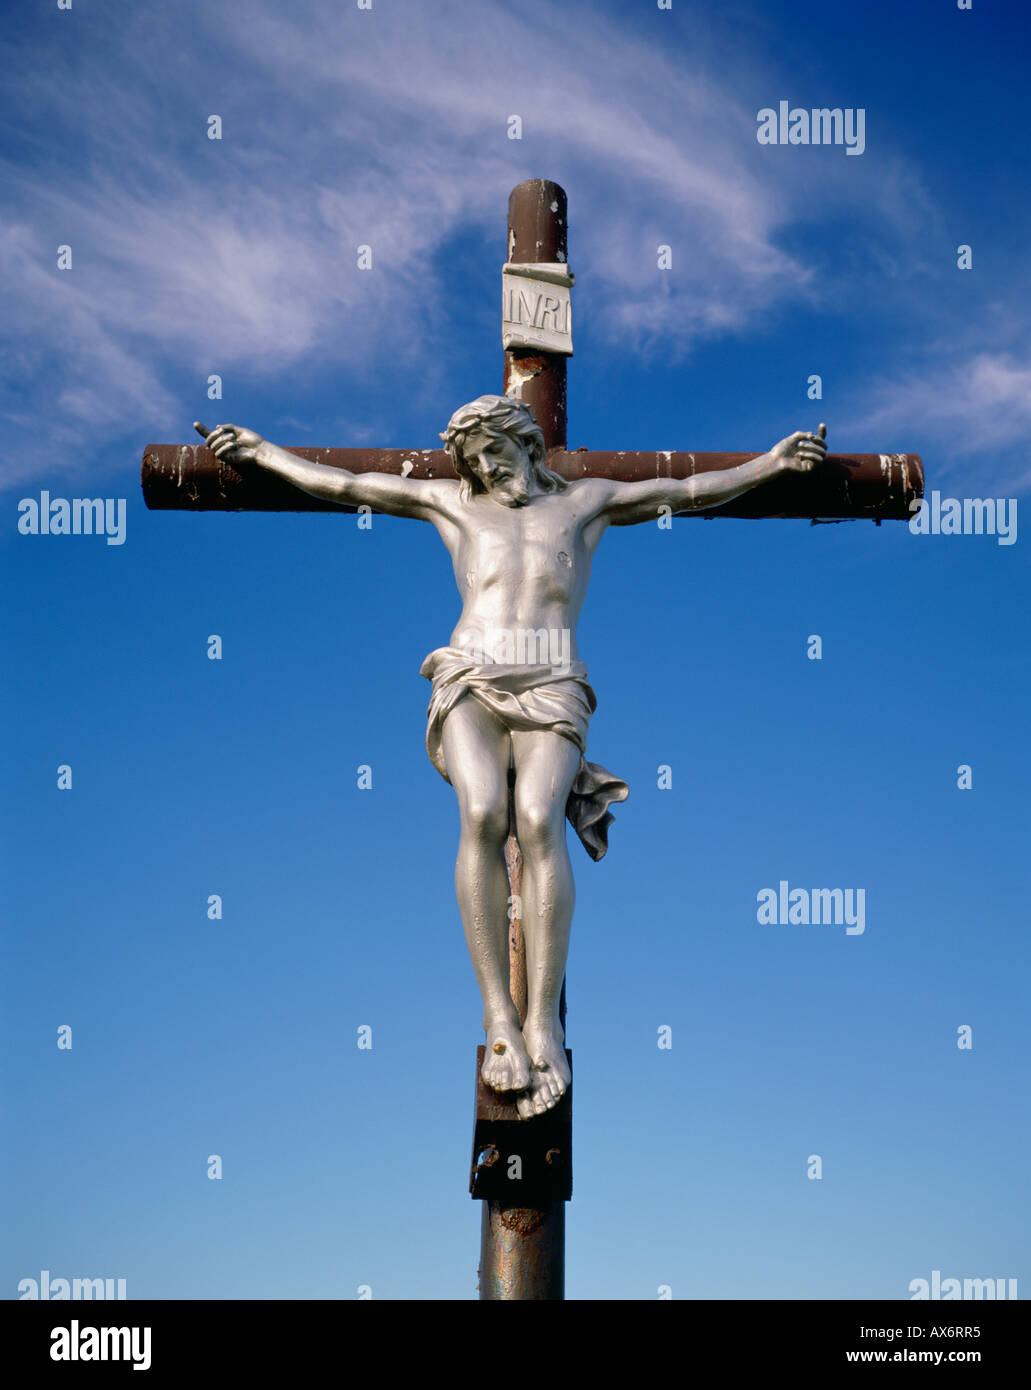 Un color plata de Jesucristo cuelga de un crucifijo en Nova Scotia, Canadá con un cielo de fondo azul Foto de stock